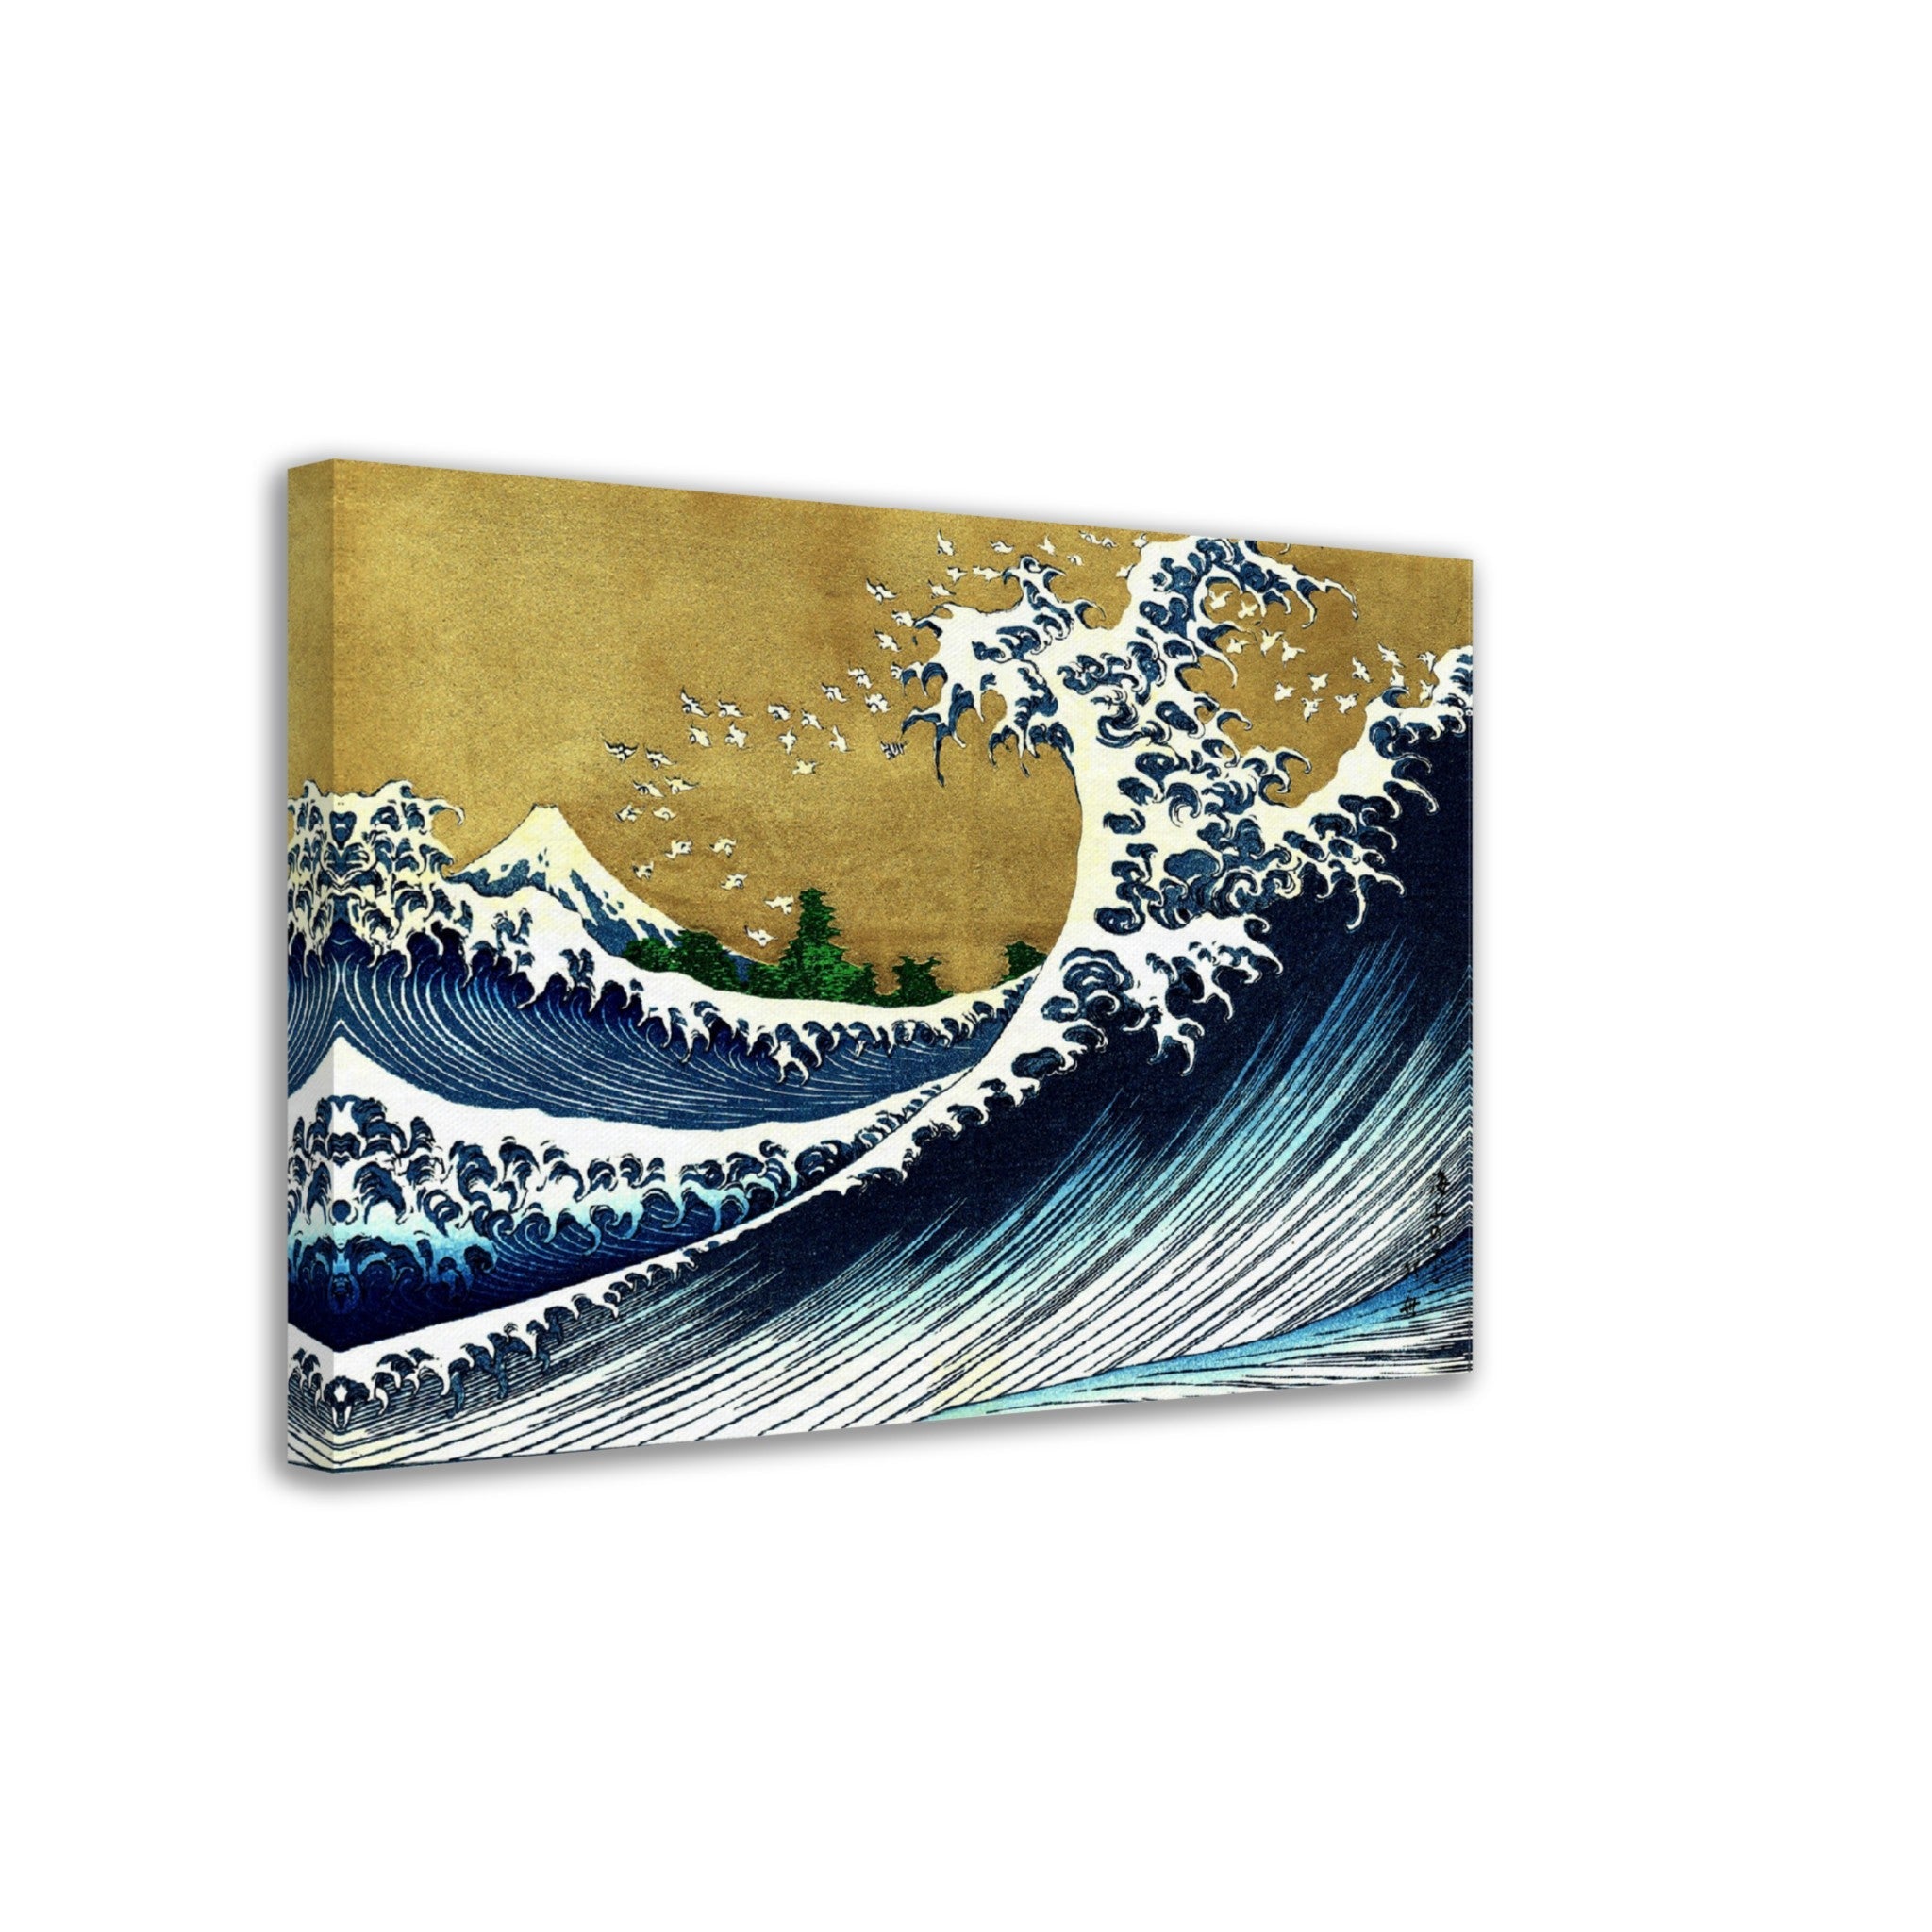 Big Wave Hokusai Canvas, Katsushika Hokusai 1833 - Big Wave 100 Views Of Fuji Canvas Print - WallArtPrints4U